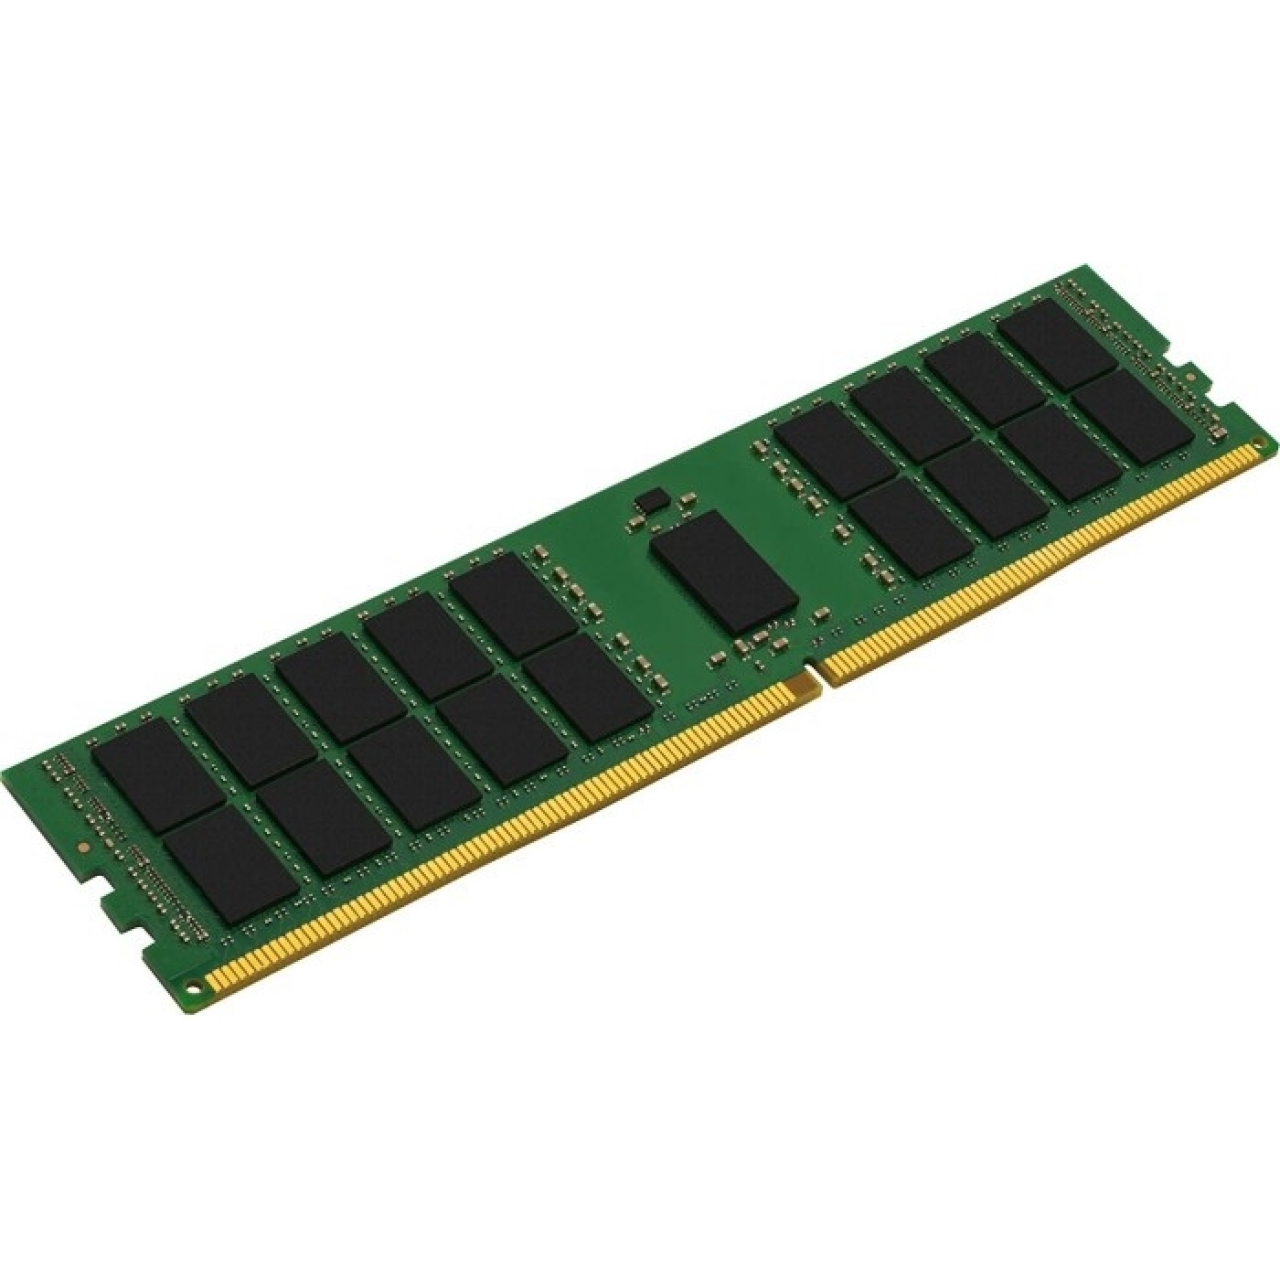 MICRON DDR3 LV RDIMM 16GB 1333Mhz 2Rx4 Sunucu Ram